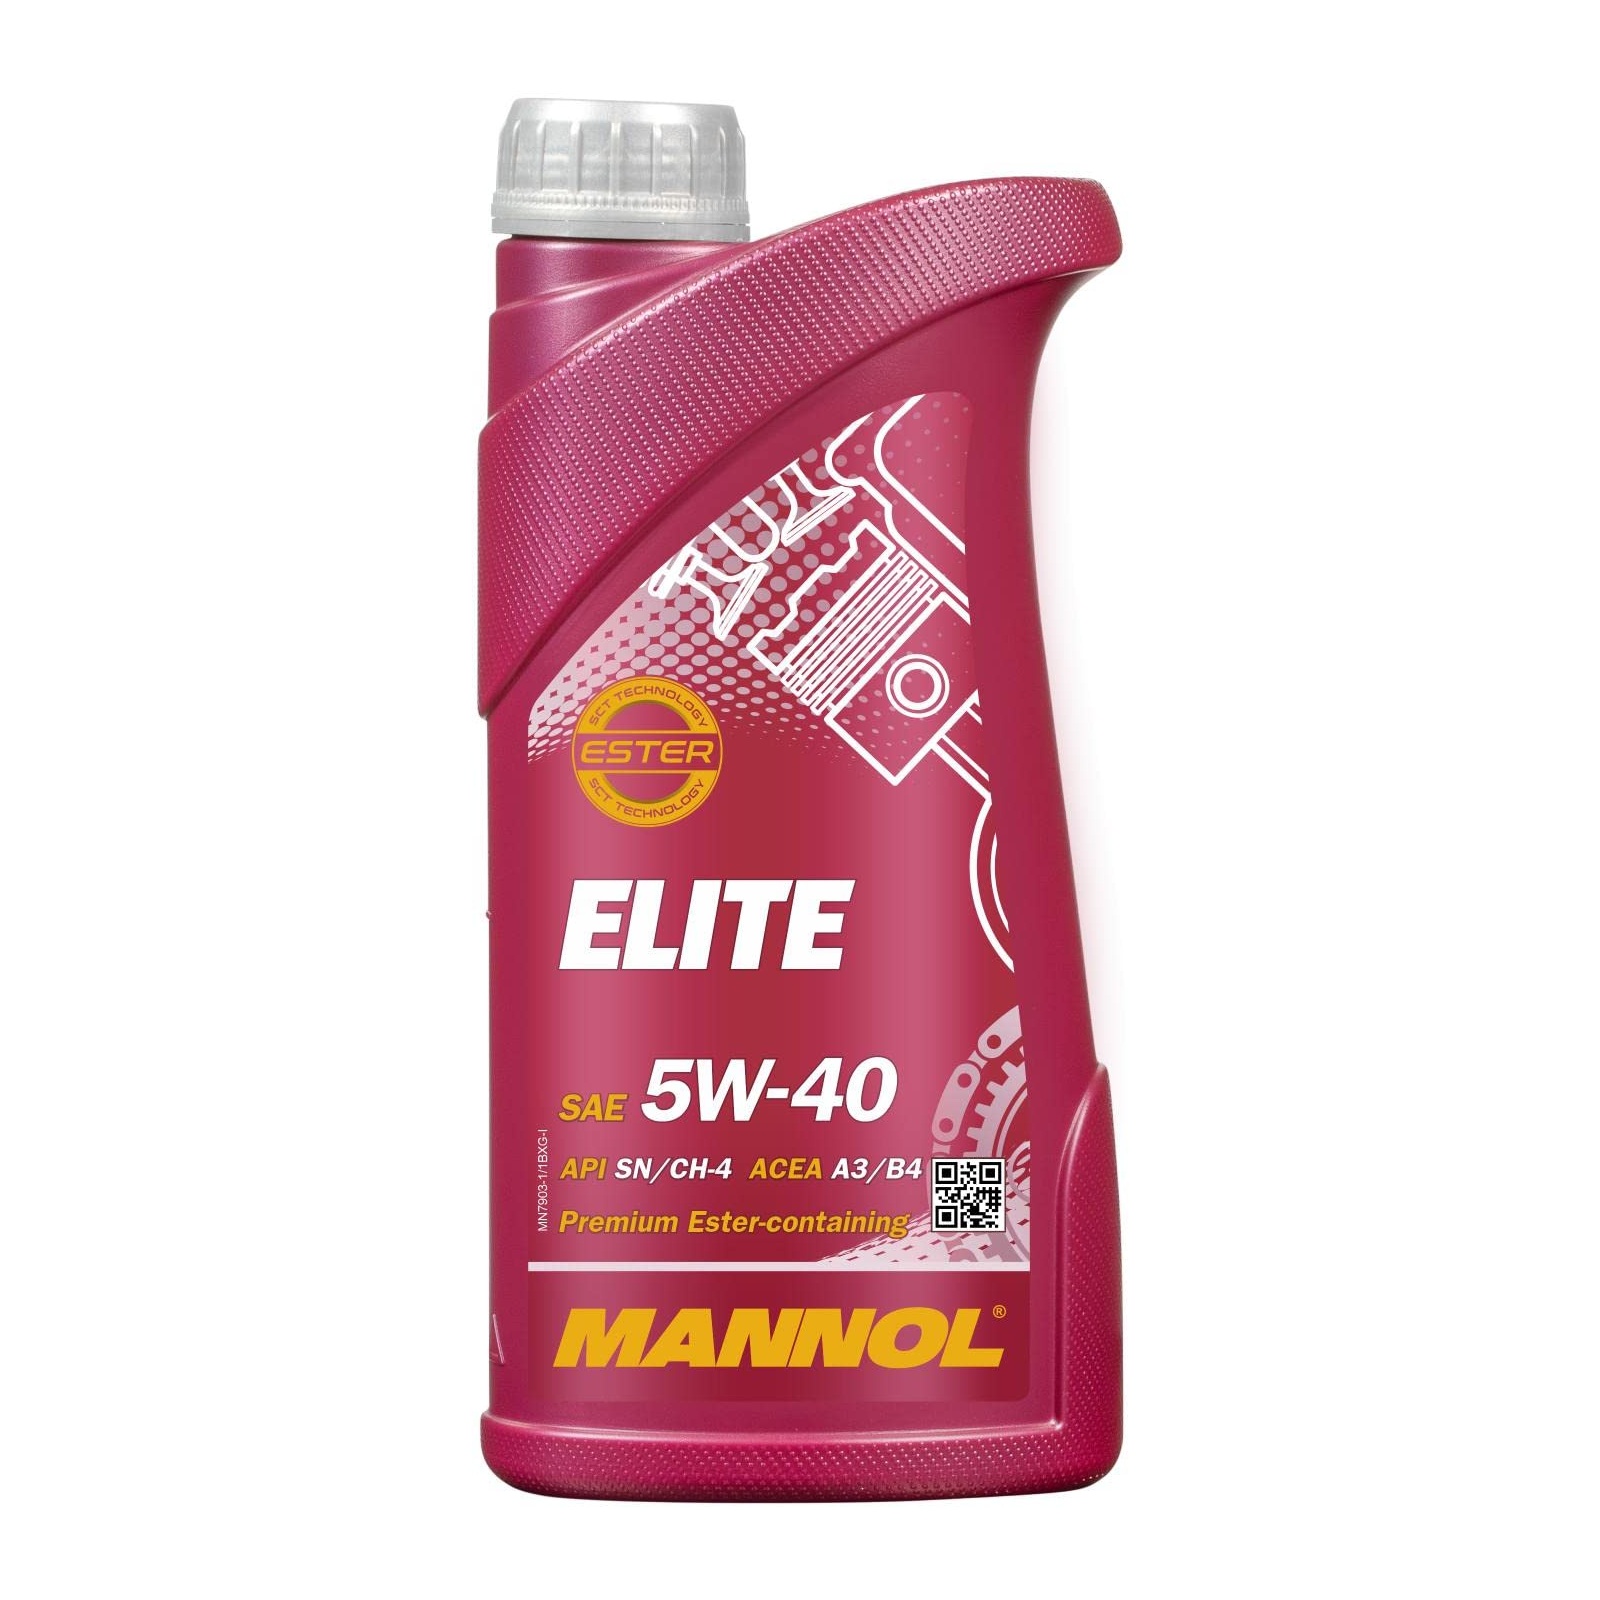 mannol elite 5w-40 7903